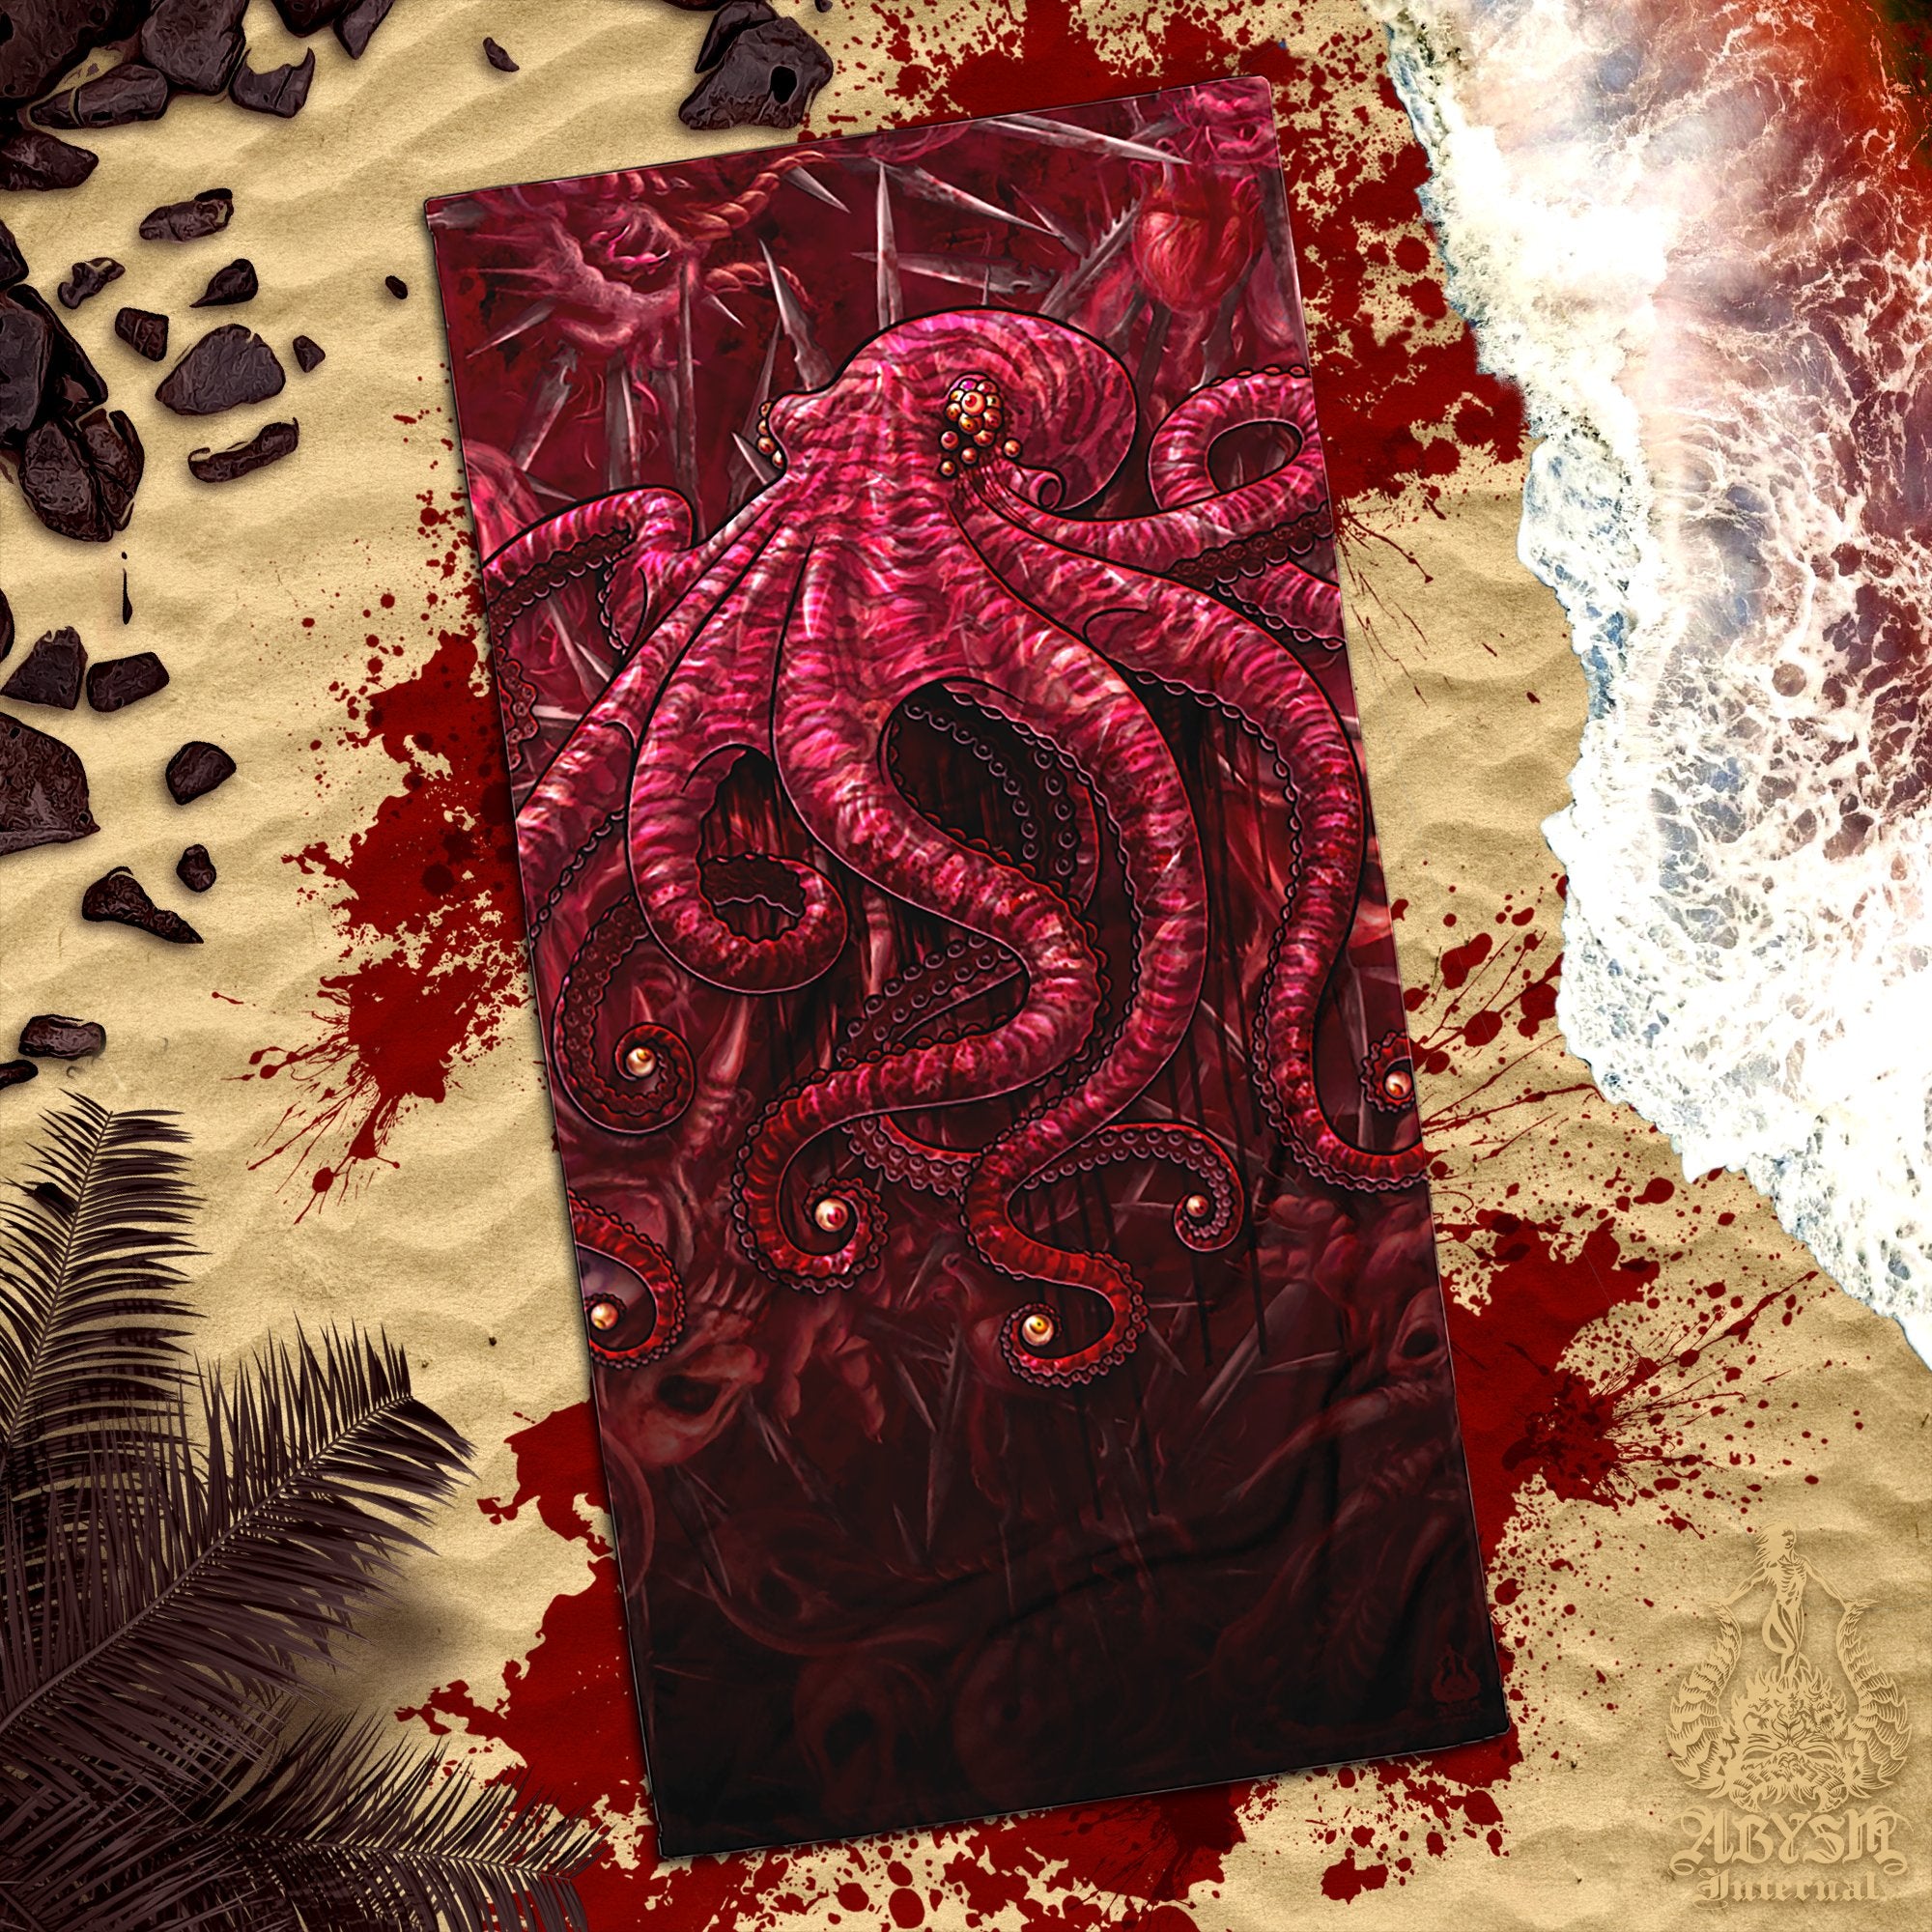 ALL Gore & Blood Beach Towel, Halloween Gift, Horror Art - Cross, Reaper, Medusa, Octopus, Spider, 8 Designs - Abysm Internal